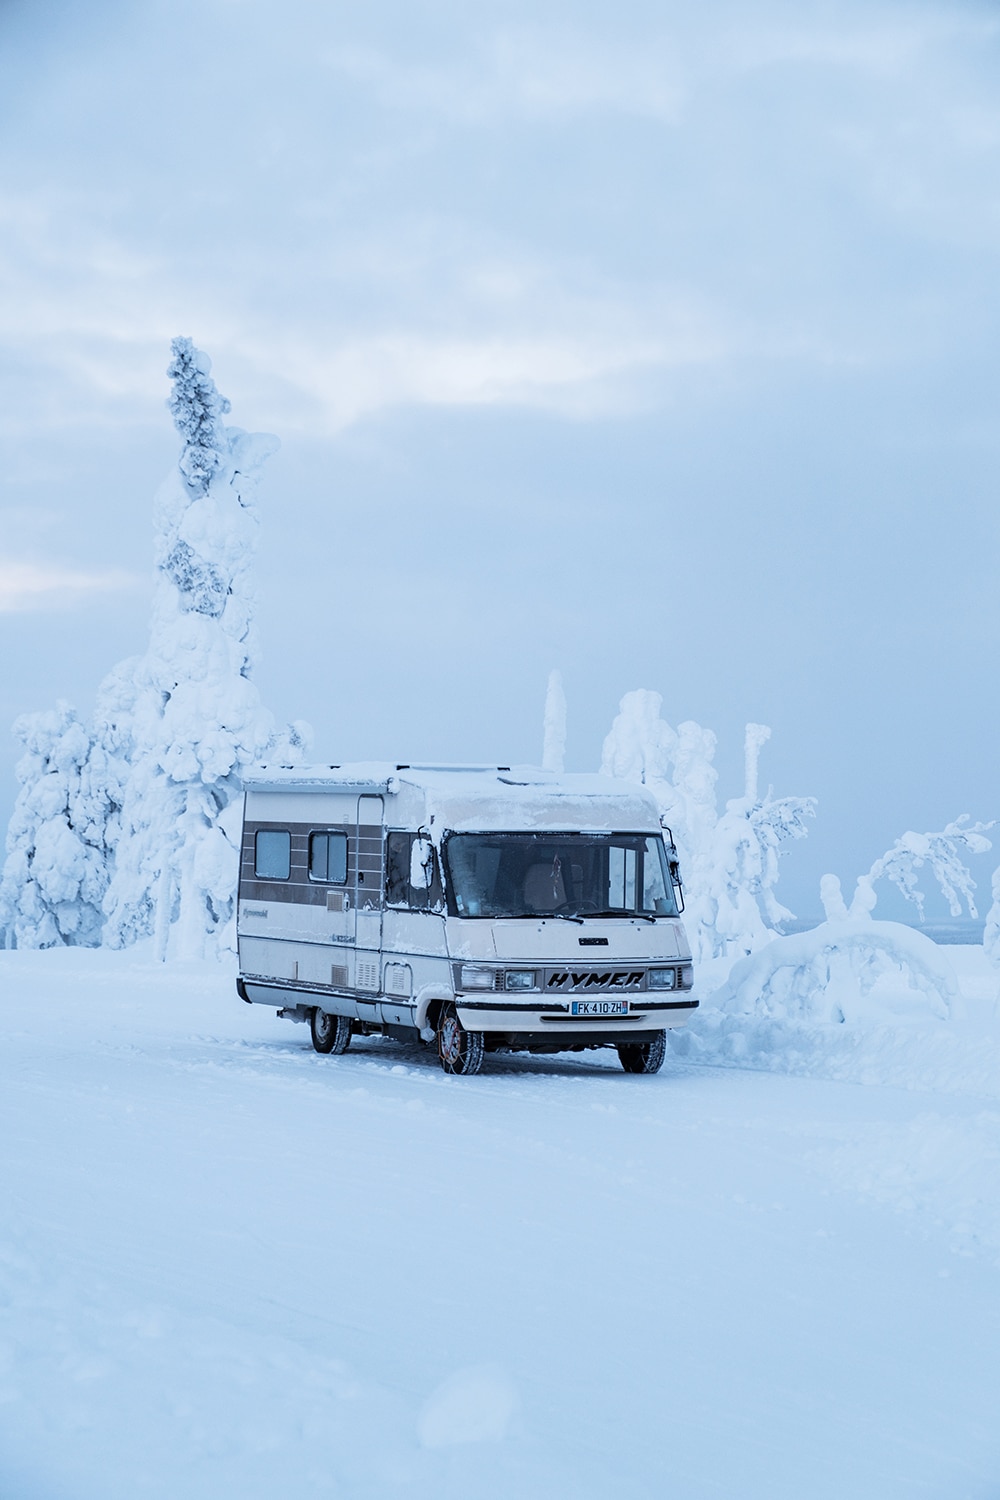 Voyage en Laponie en hiver en camping-car